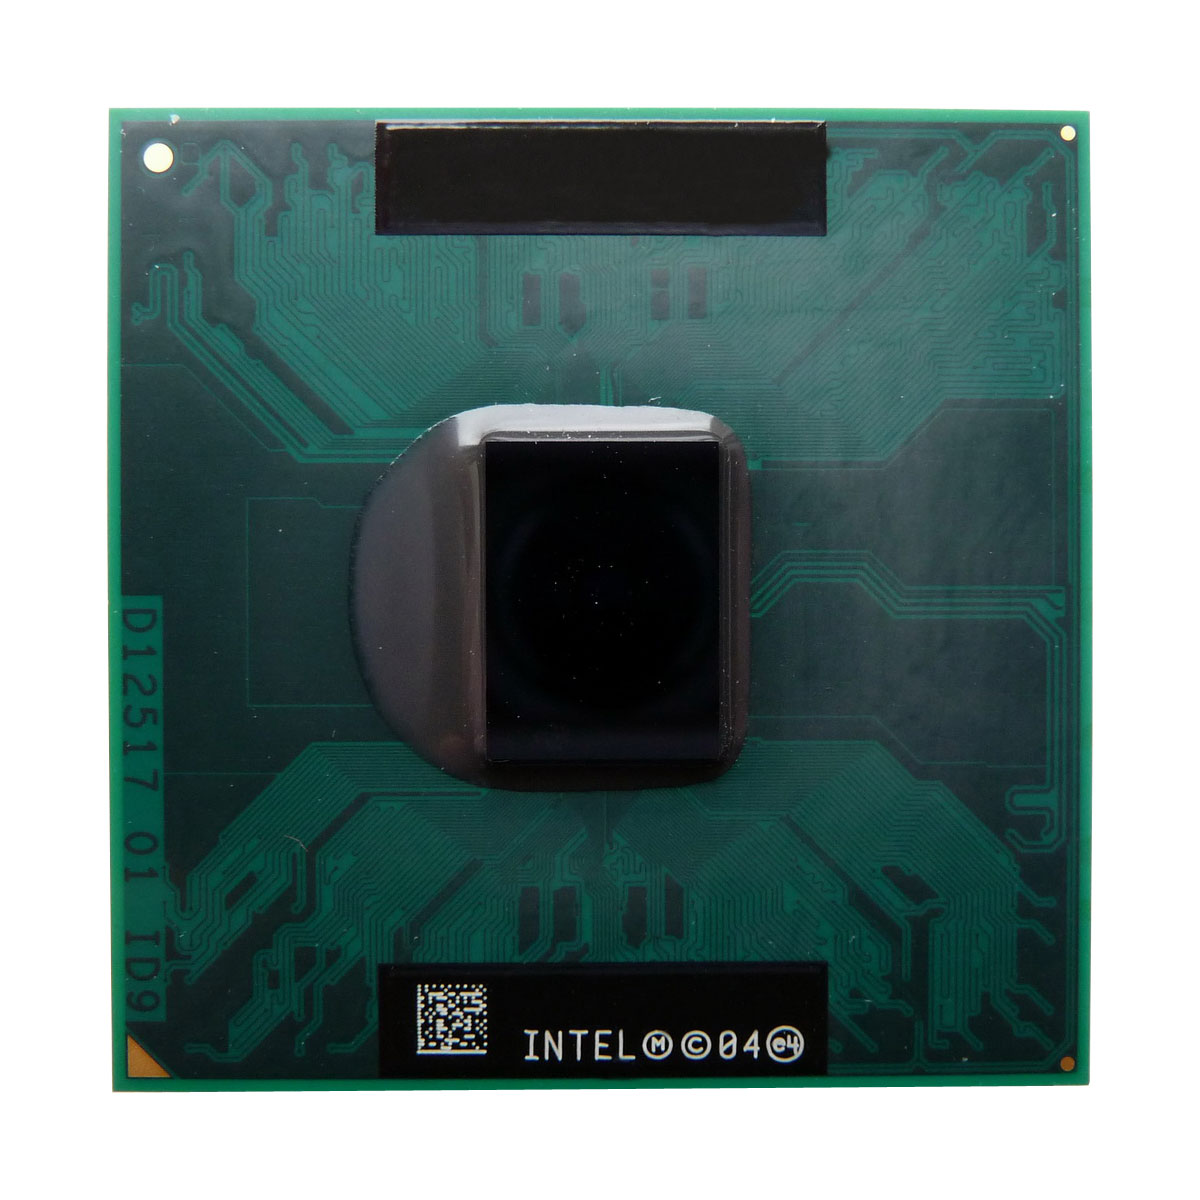 SL9JN | Intel Core DUO T2600 2.16GHz 2MB L2 Cache 667MHz FSB Socket PPGA-478 65NM 31W Processor